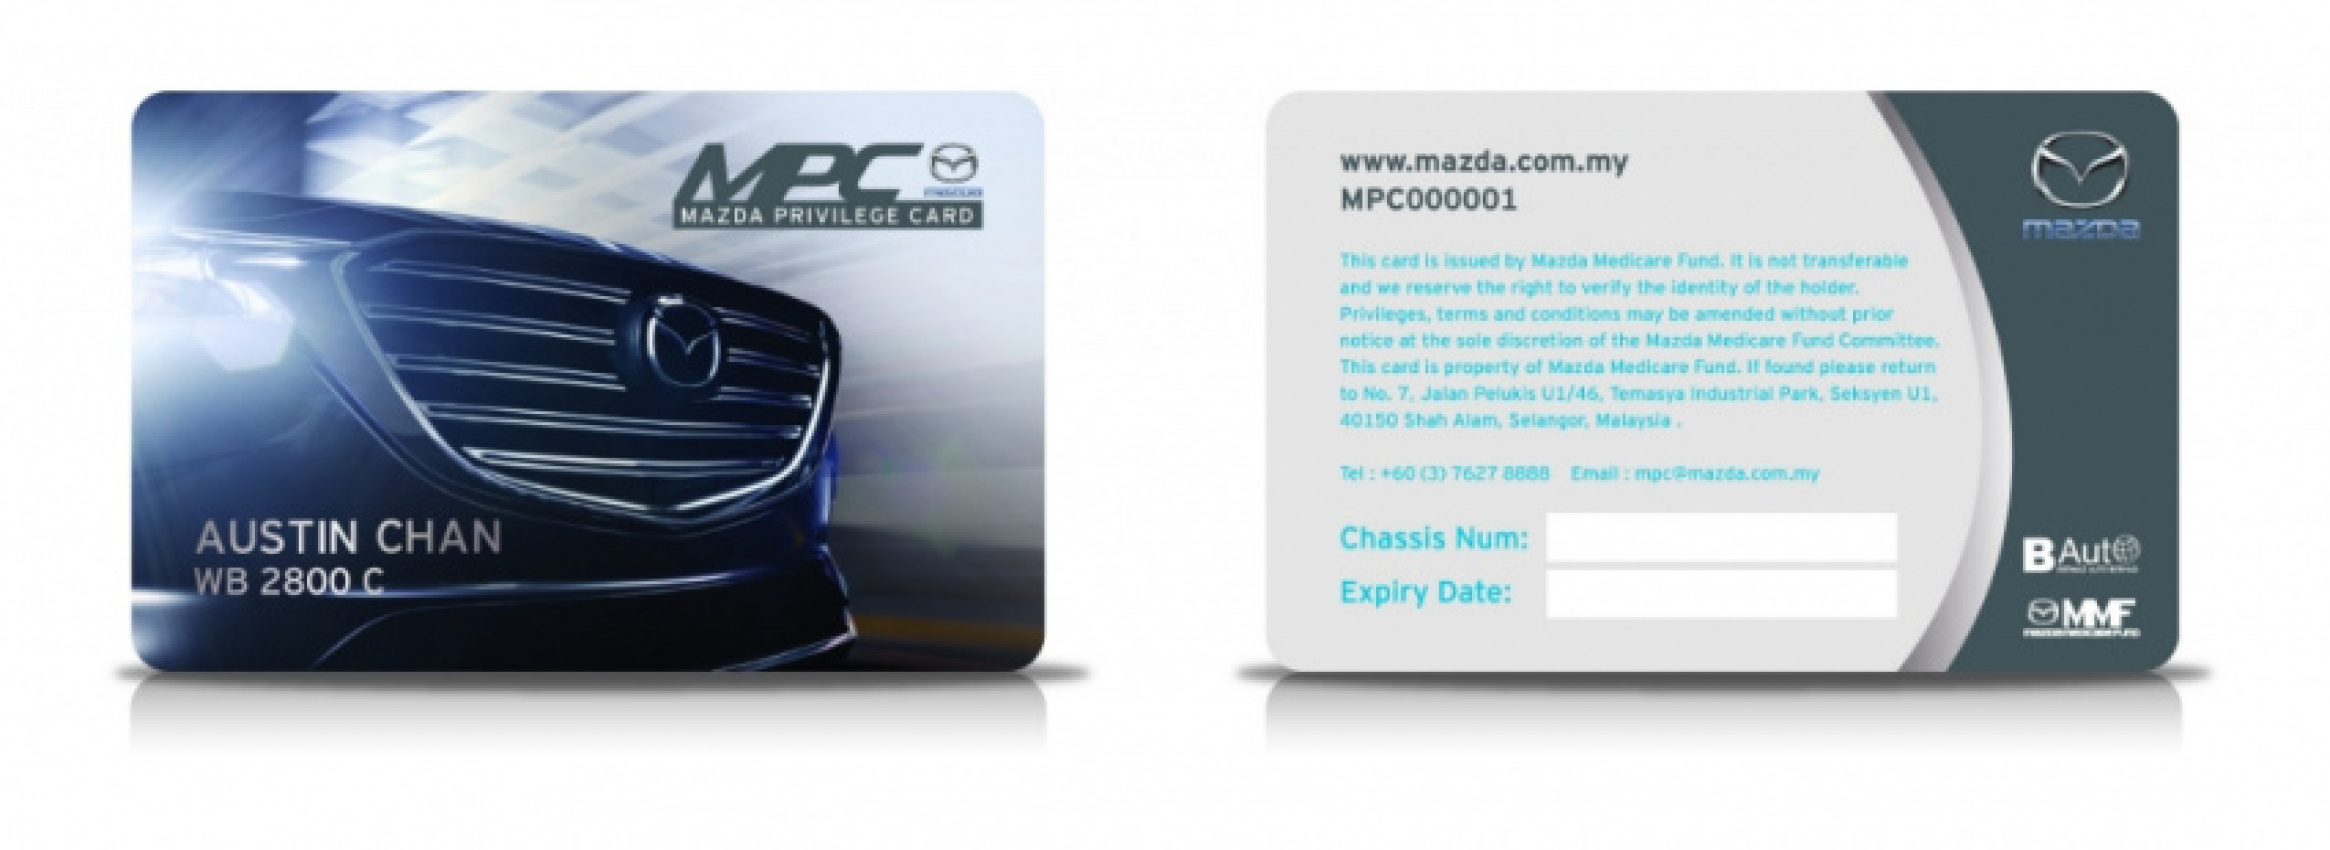 autos, car brands, cars, mazda, bermaz, card, prima merdu, mazda privilege card introduced for mazda owners